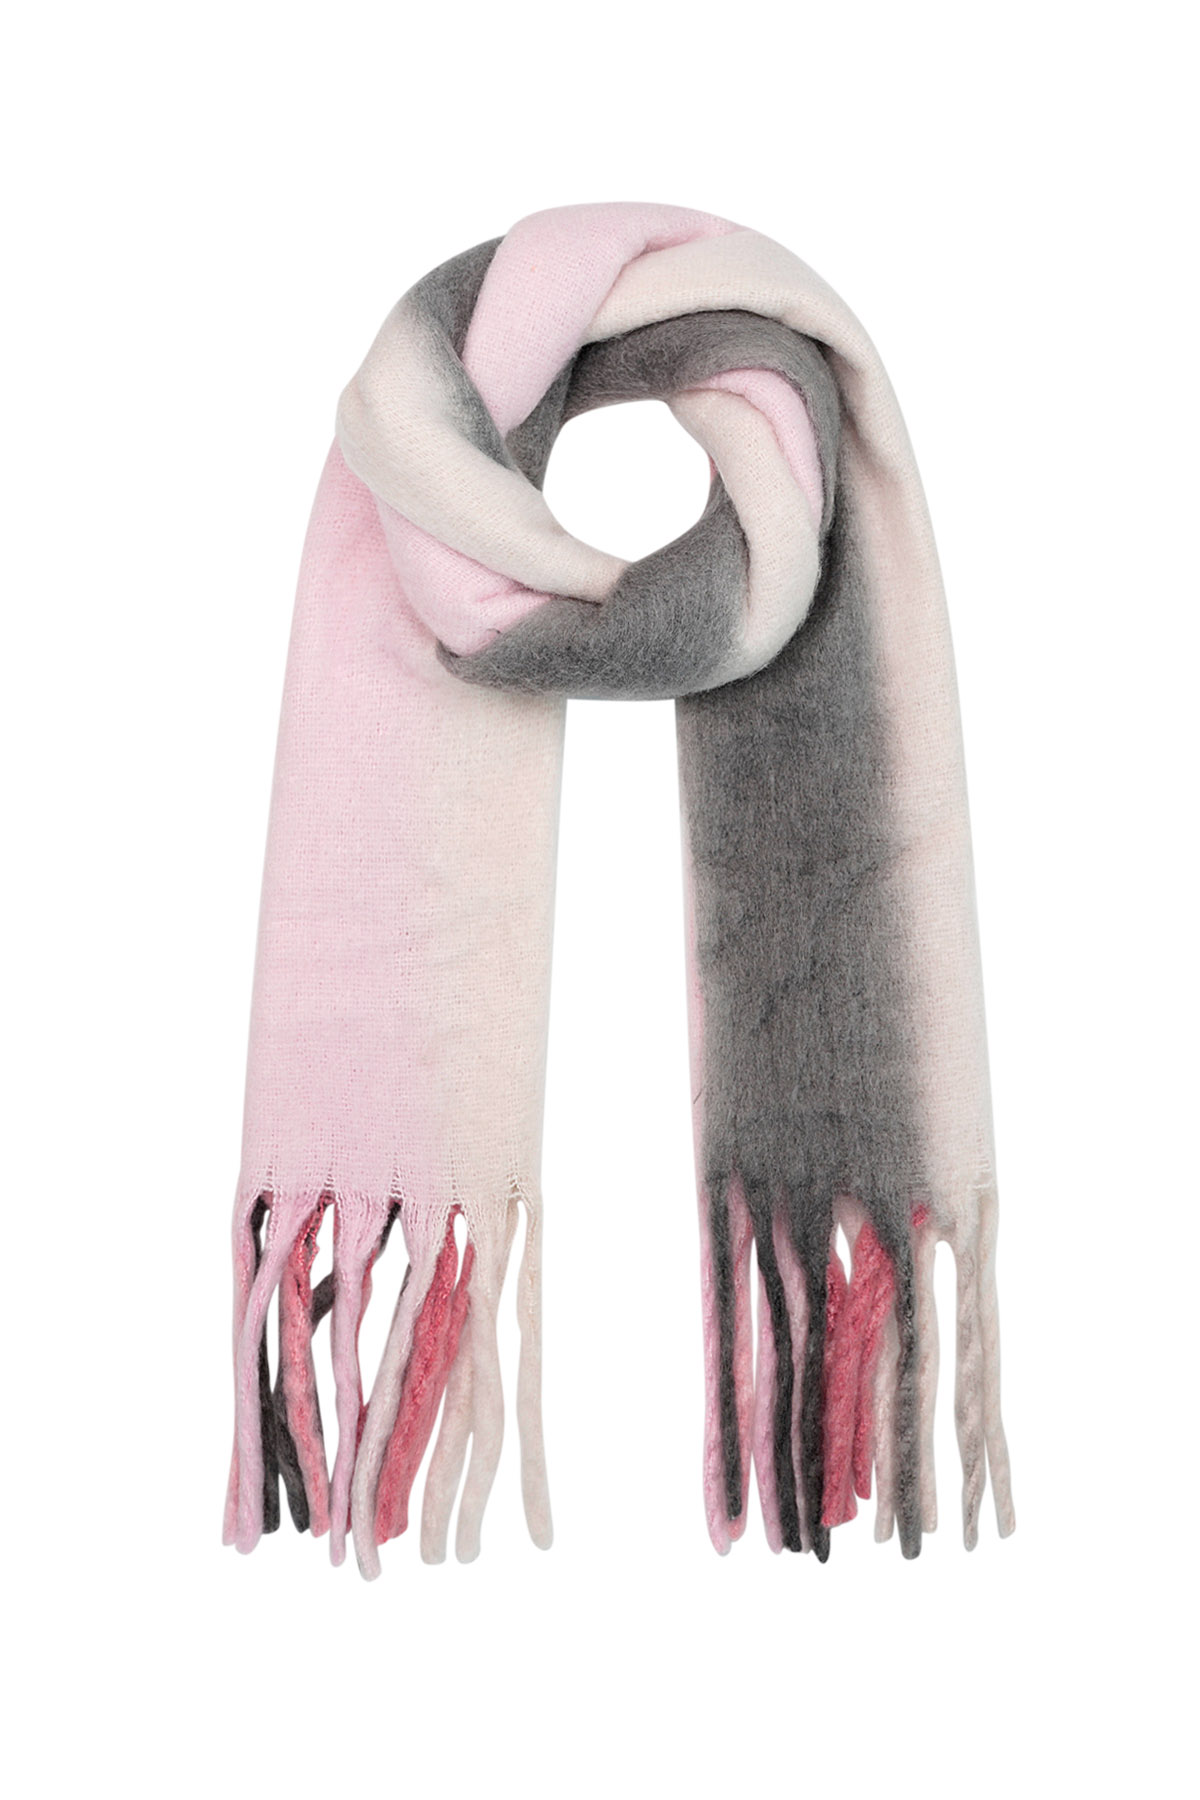 Bufanda de invierno colores degradados rosa/gris Poliéster 